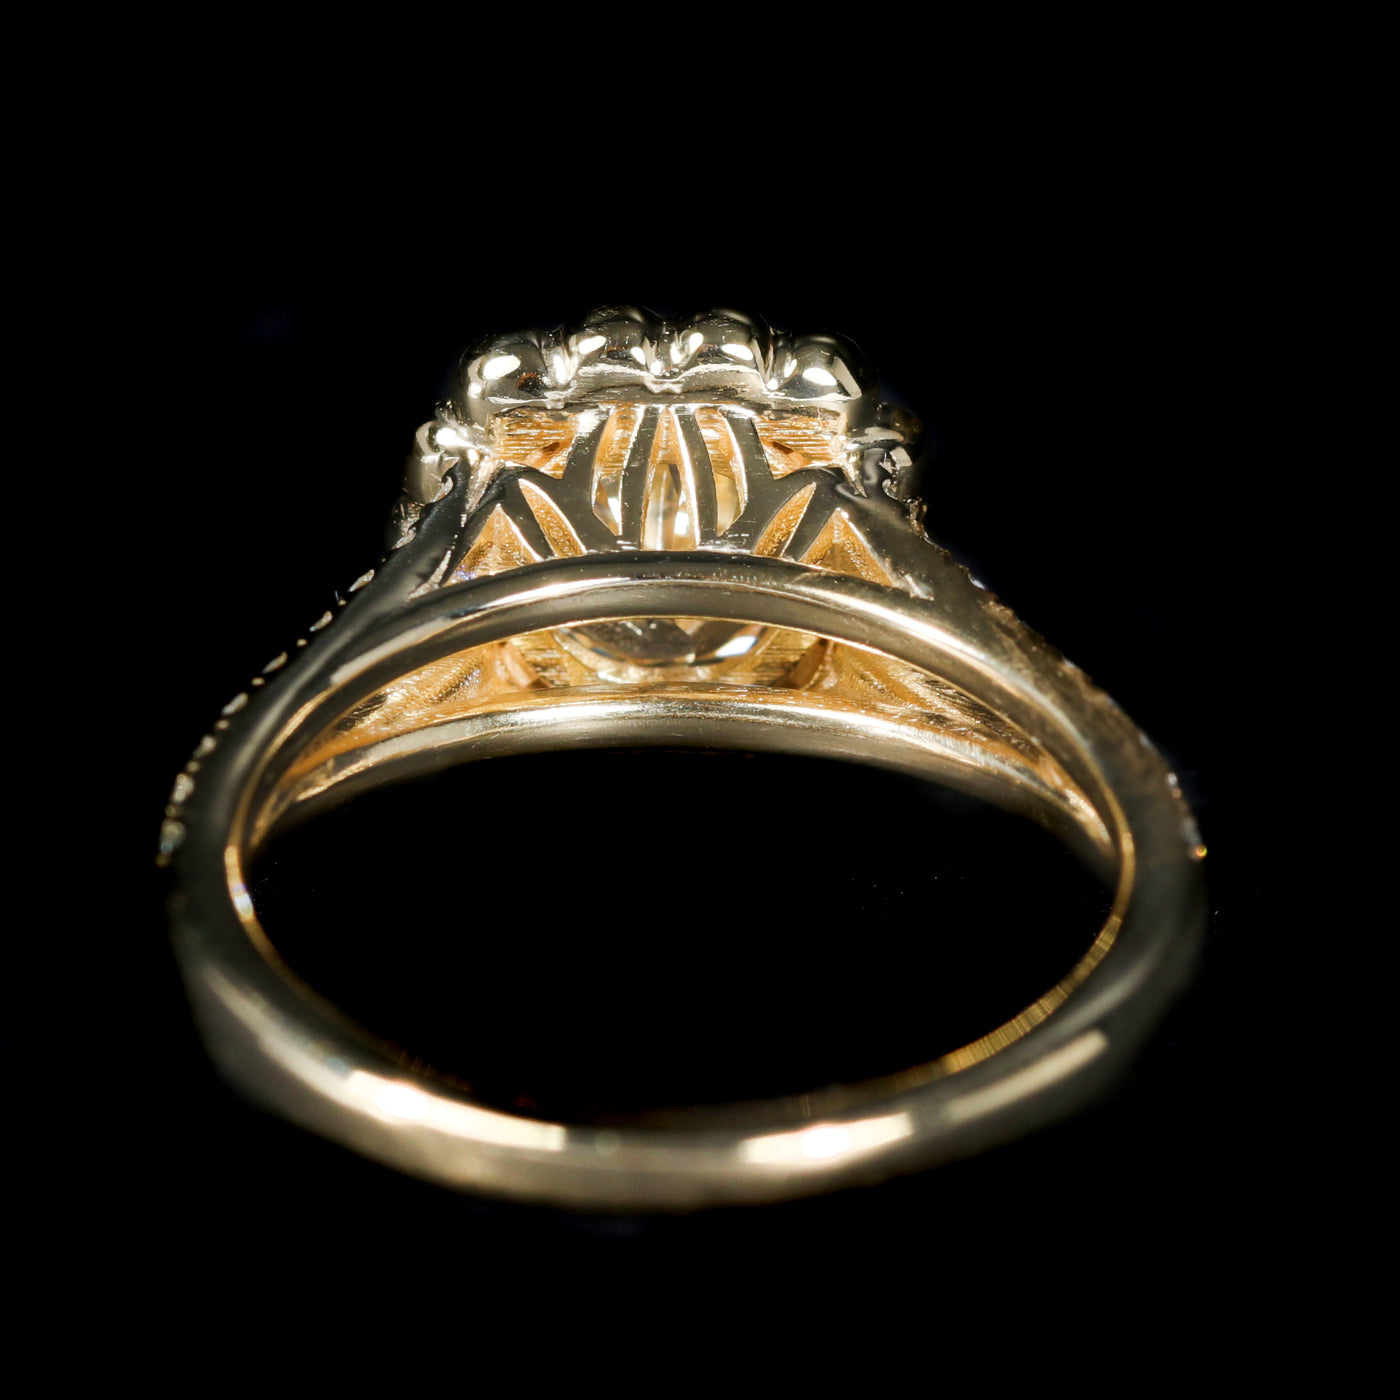 18K Yellow Gold GIA 1.24 Carat Old European Cut Diamond Engagement Ring